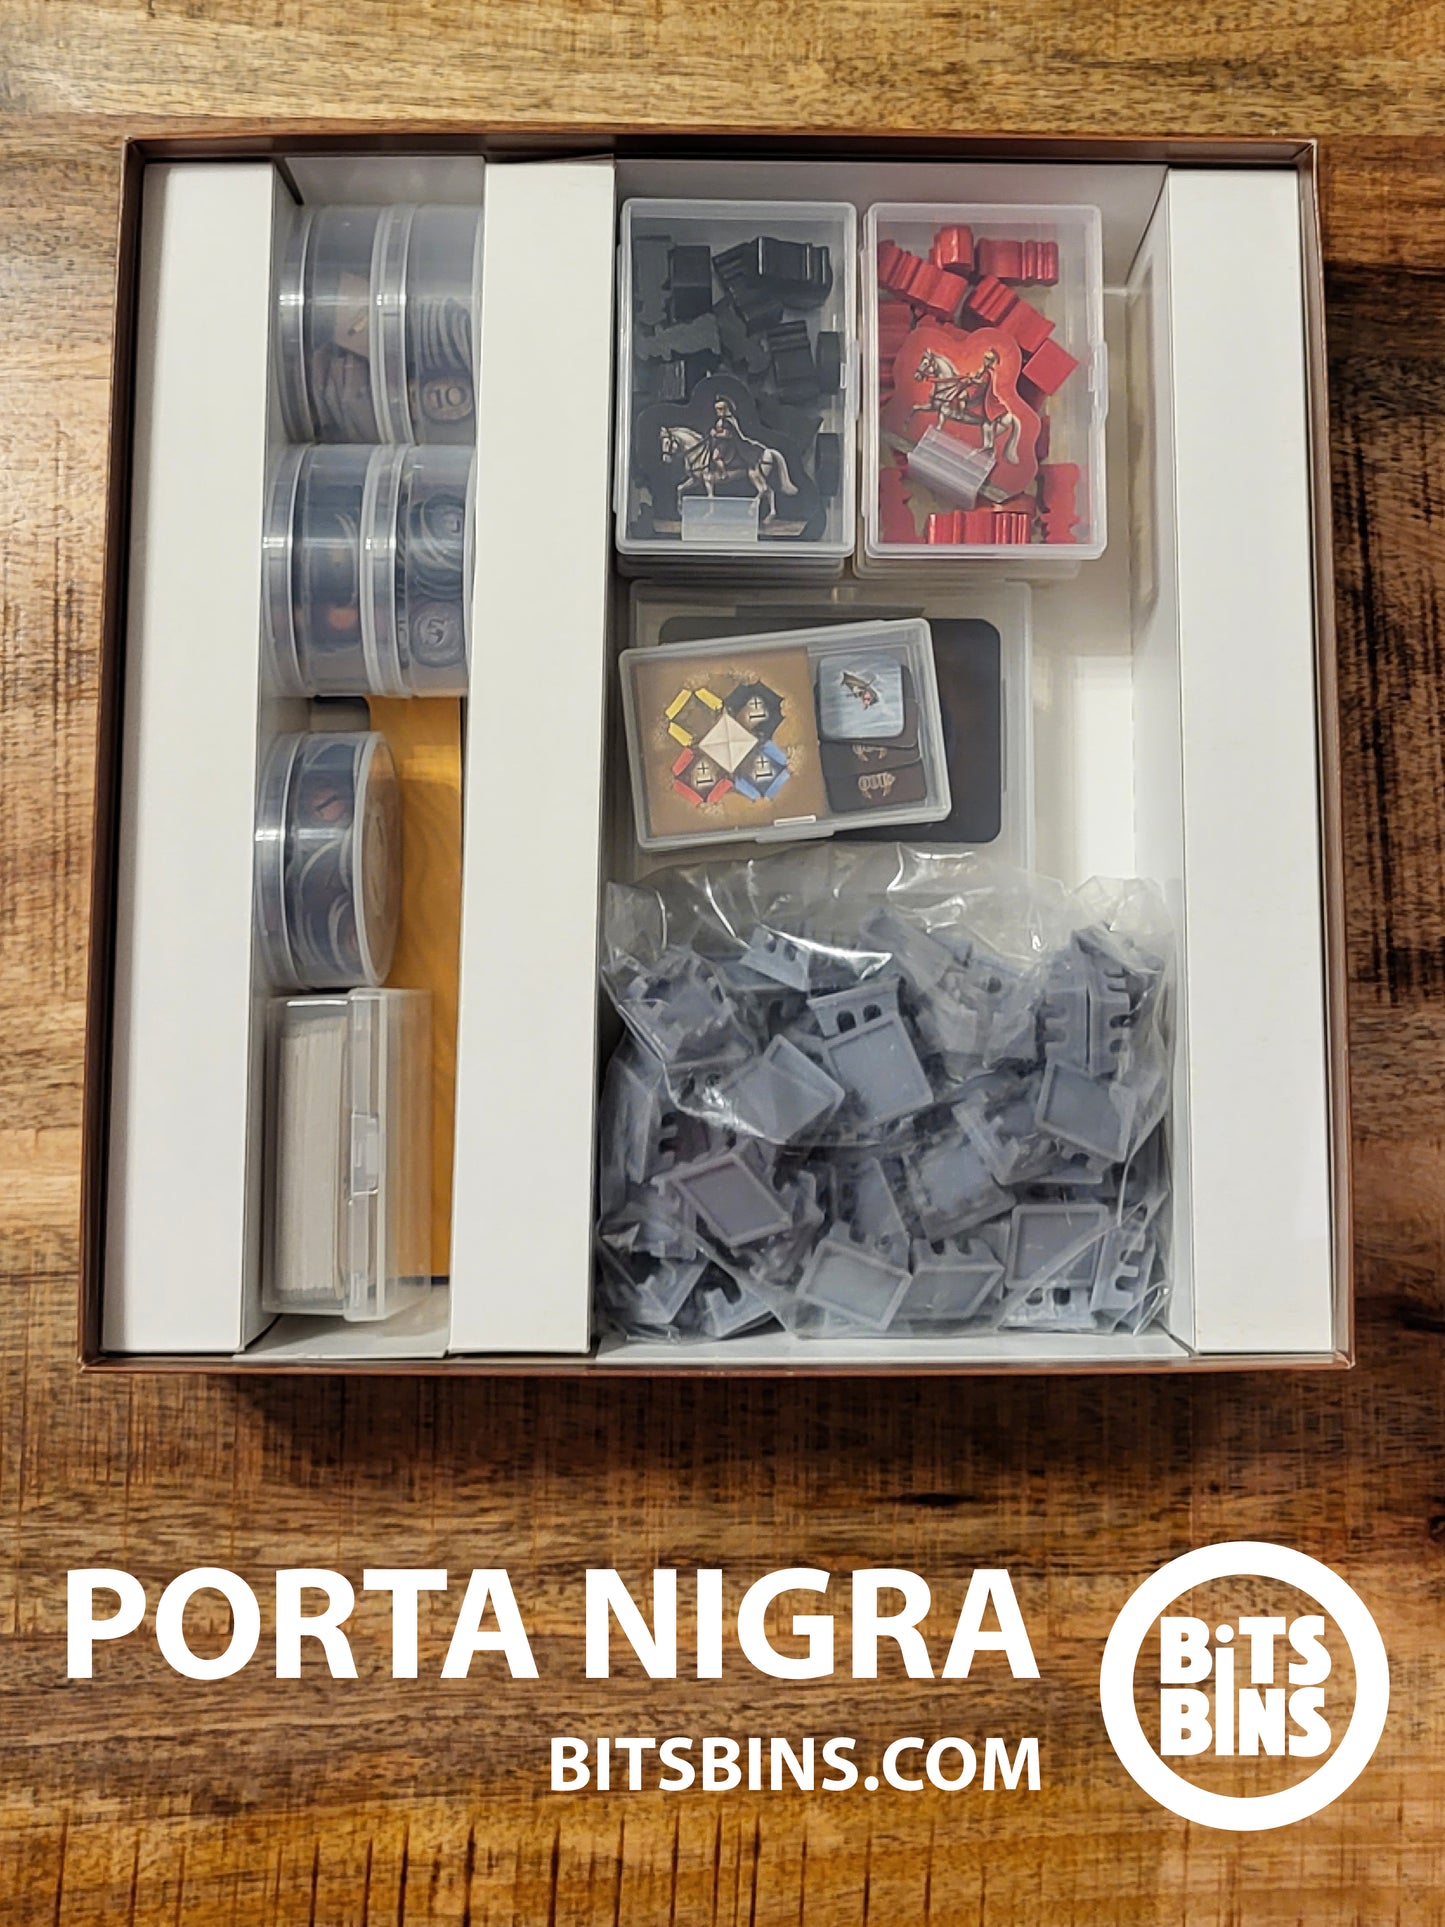 RECOMMENDED Bitsbins Porta Nigra - 5 Pods, 2 Originals, 4 XLs, 1 Card Box